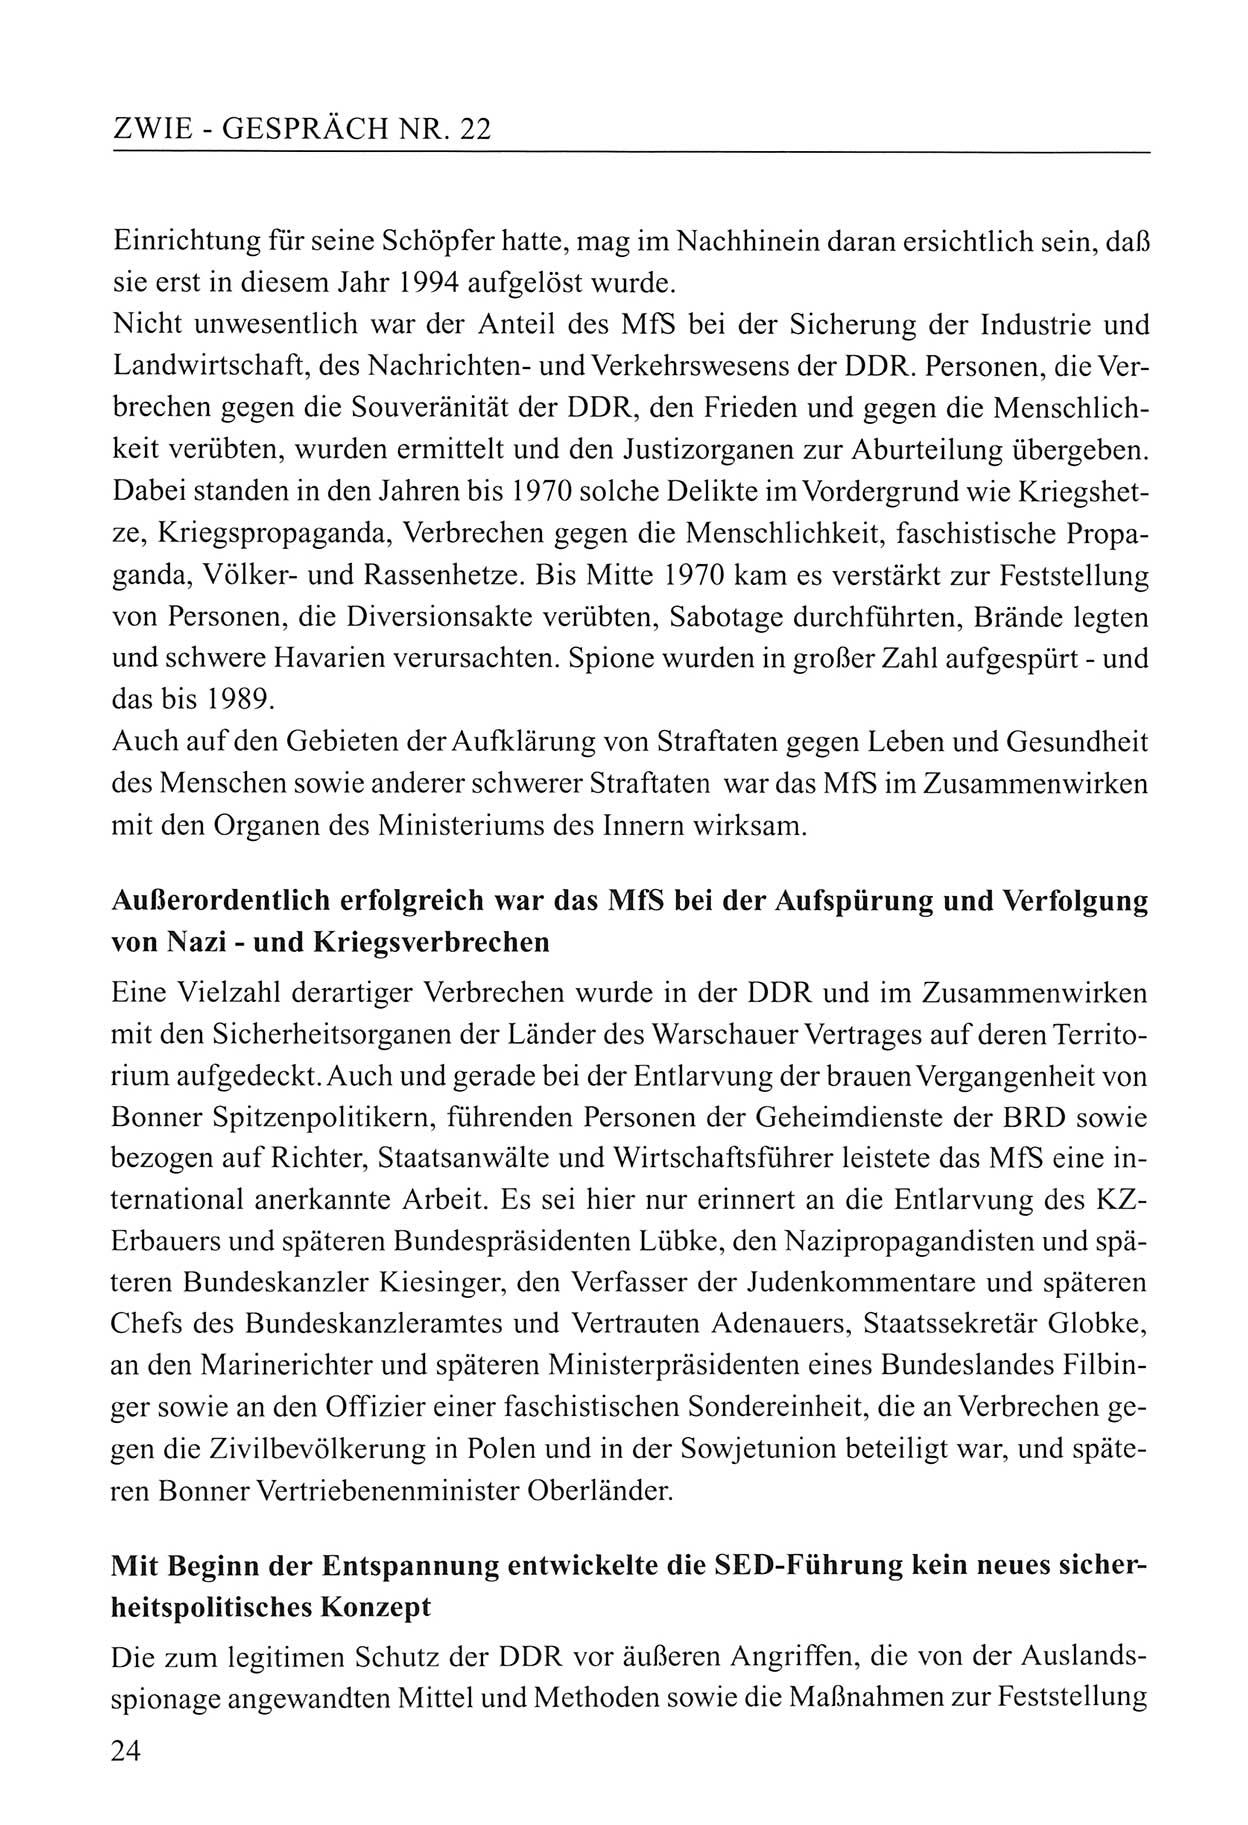 Zwie-Gespräch, Beiträge zum Umgang mit der Staatssicherheits-Vergangenheit [Deutsche Demokratische Republik (DDR)], Ausgabe Nr. 22, Berlin 1994, Seite 24 (Zwie-Gespr. Ausg. 22 1994, S. 24)